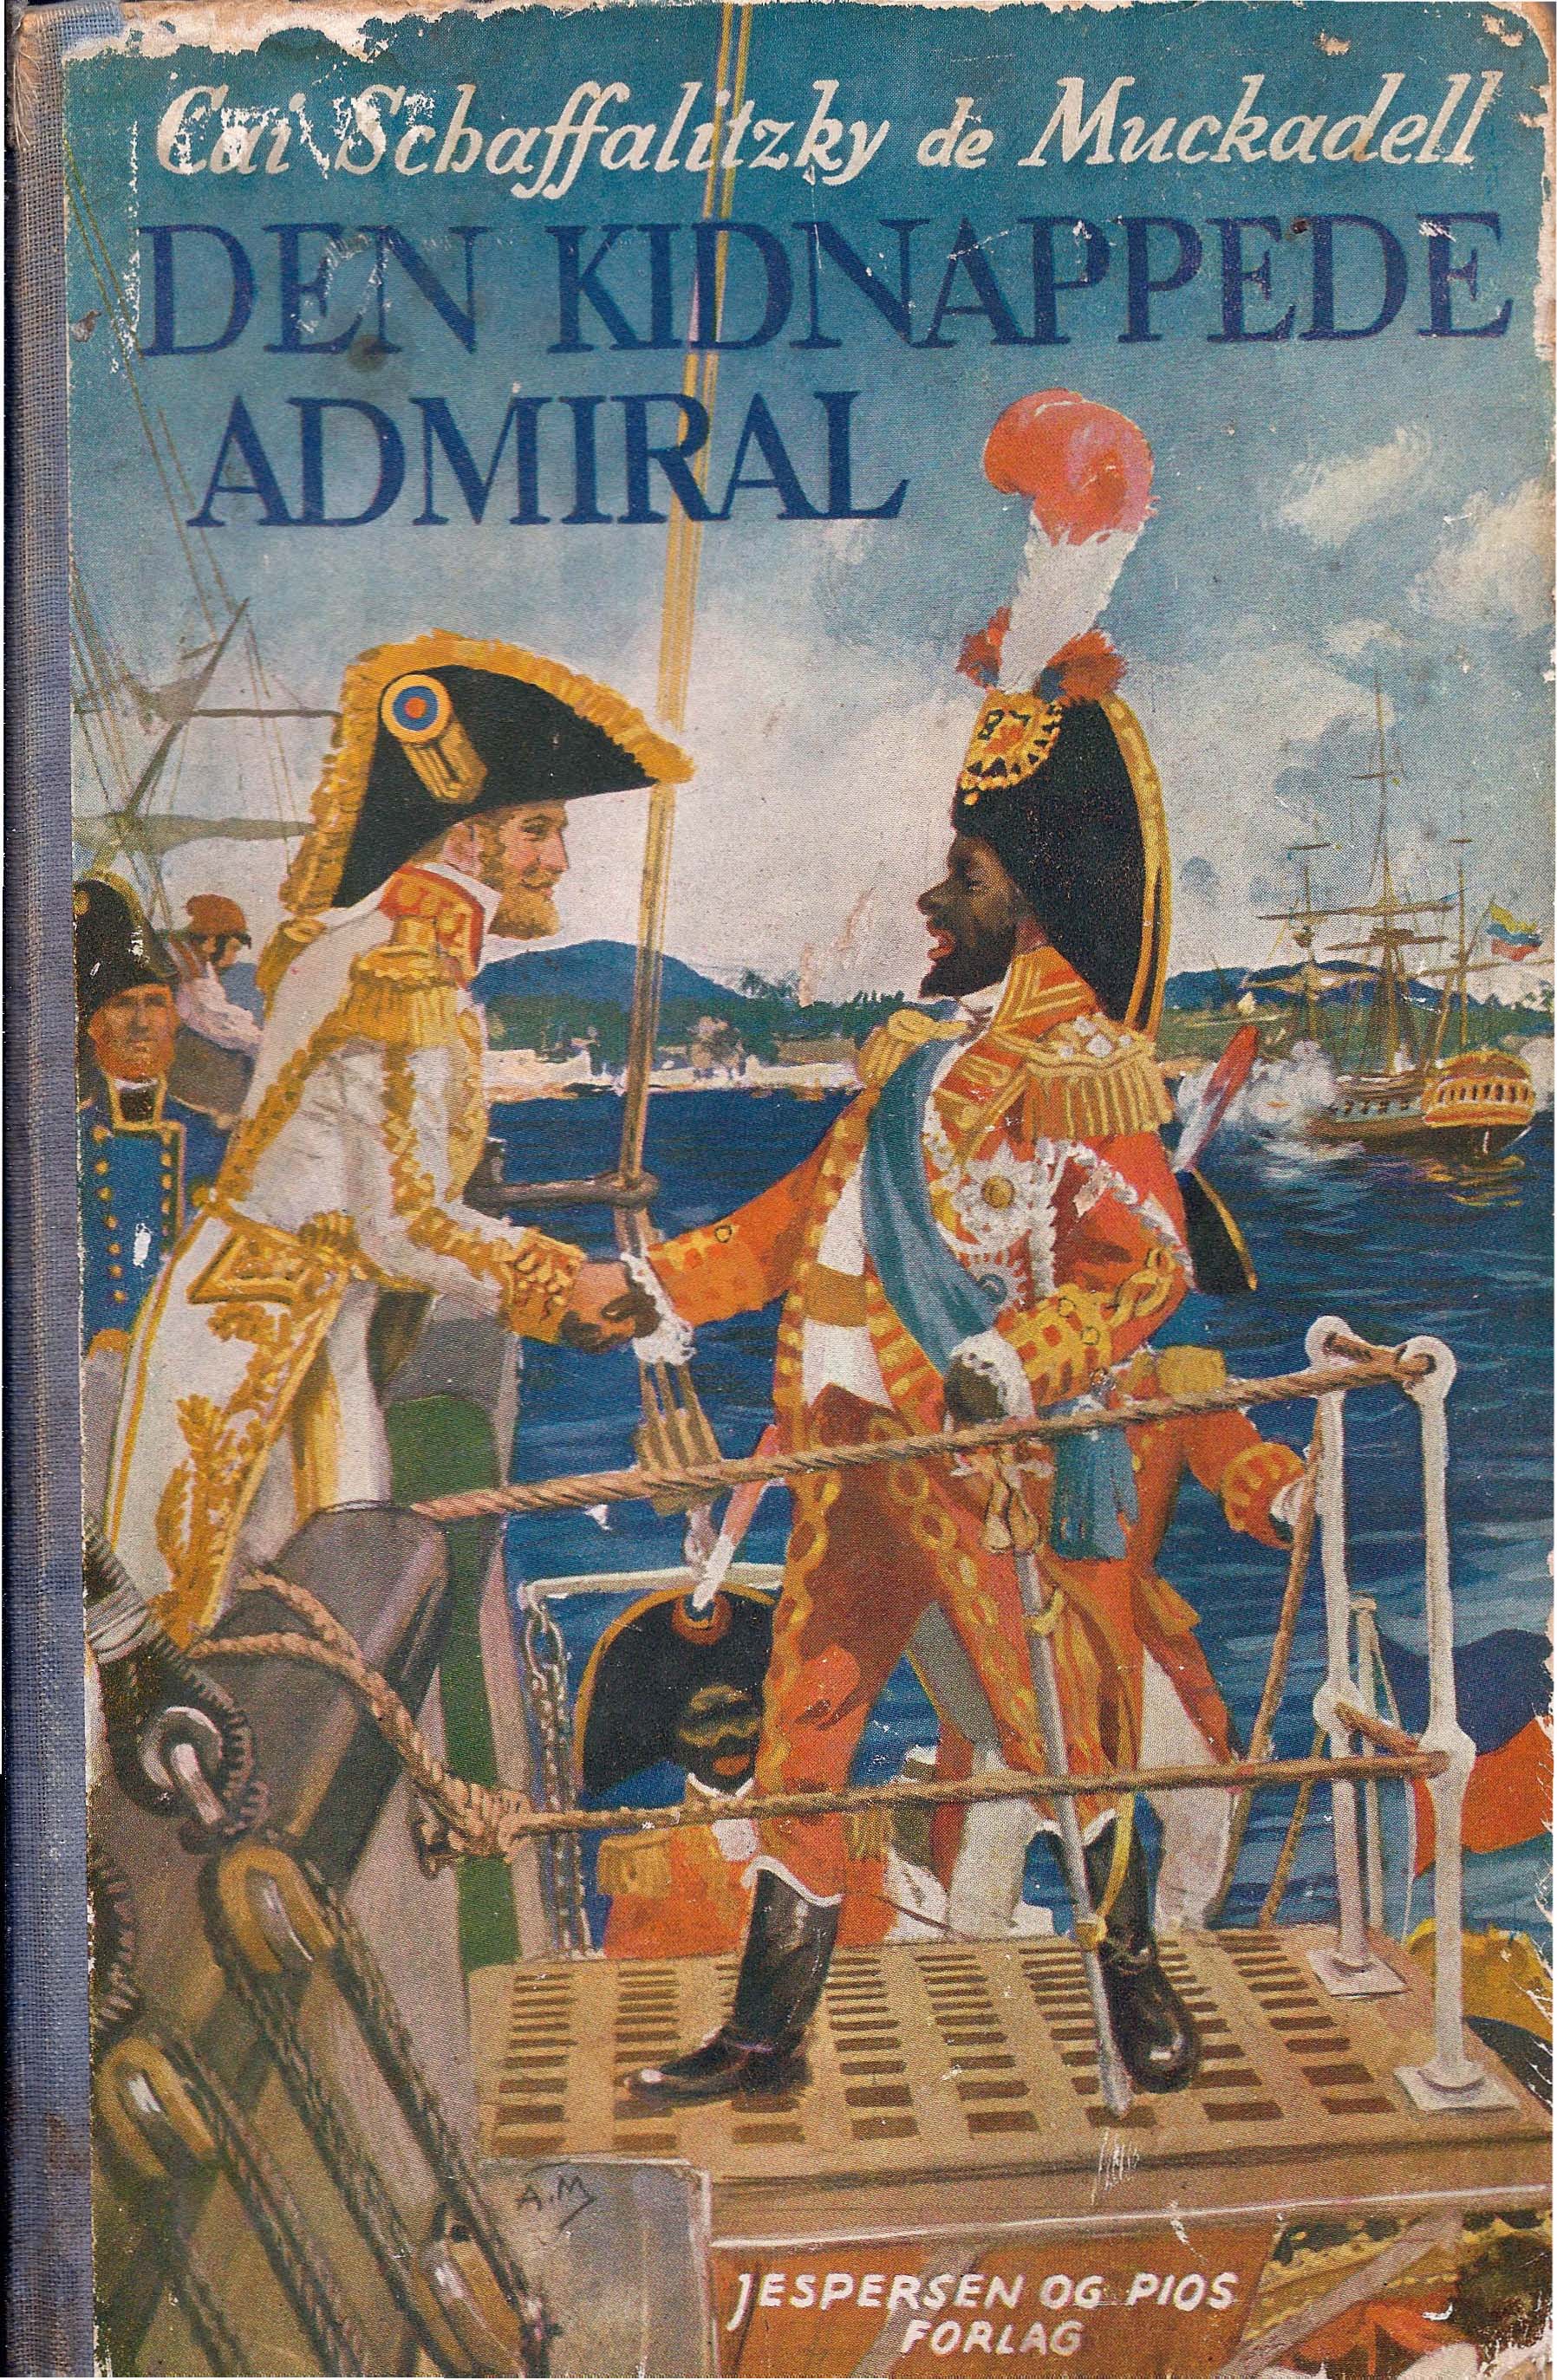 Den kindnappede Admiral - Cai Schaffalitzky de Muchadell-1